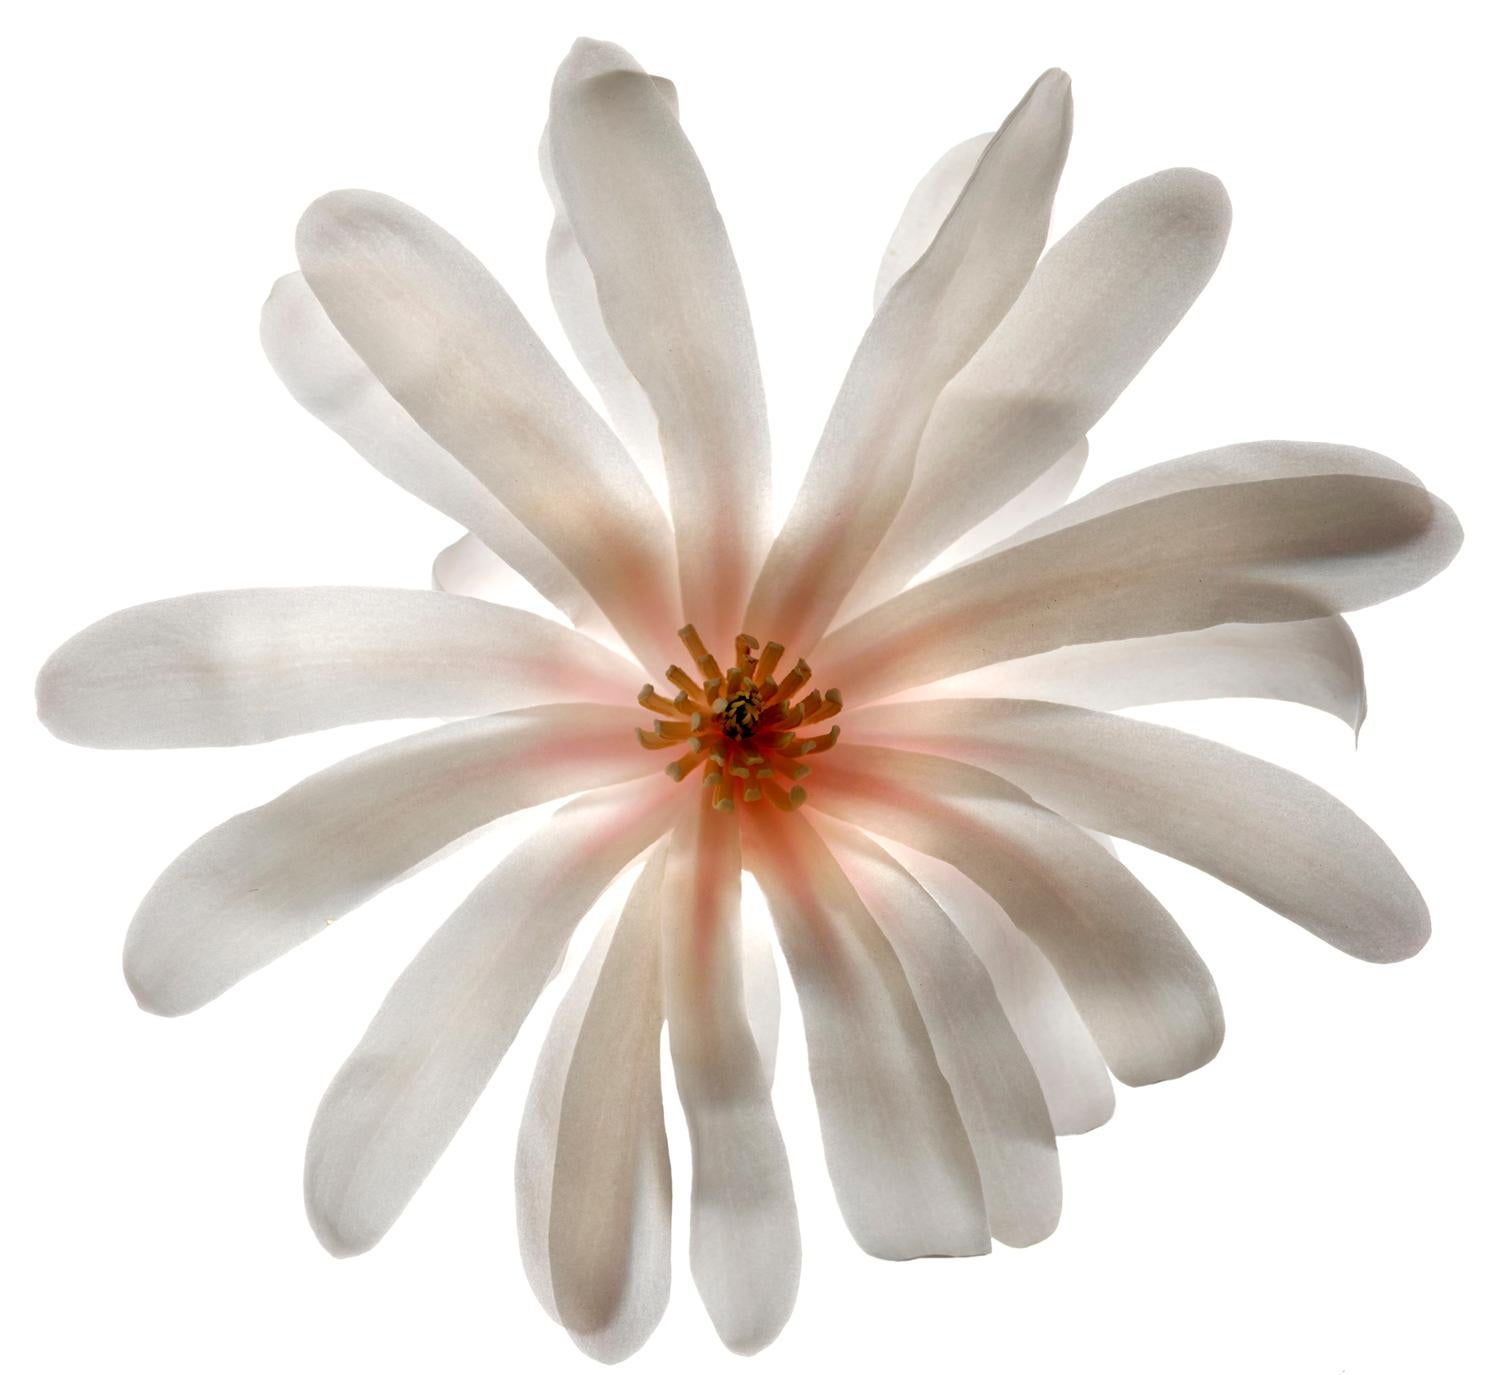 Ohne Titel - Nummer 74: Stillleben-Fotografie einer weißen Blume und einer rosafarbenen orangefarbenen Mitte